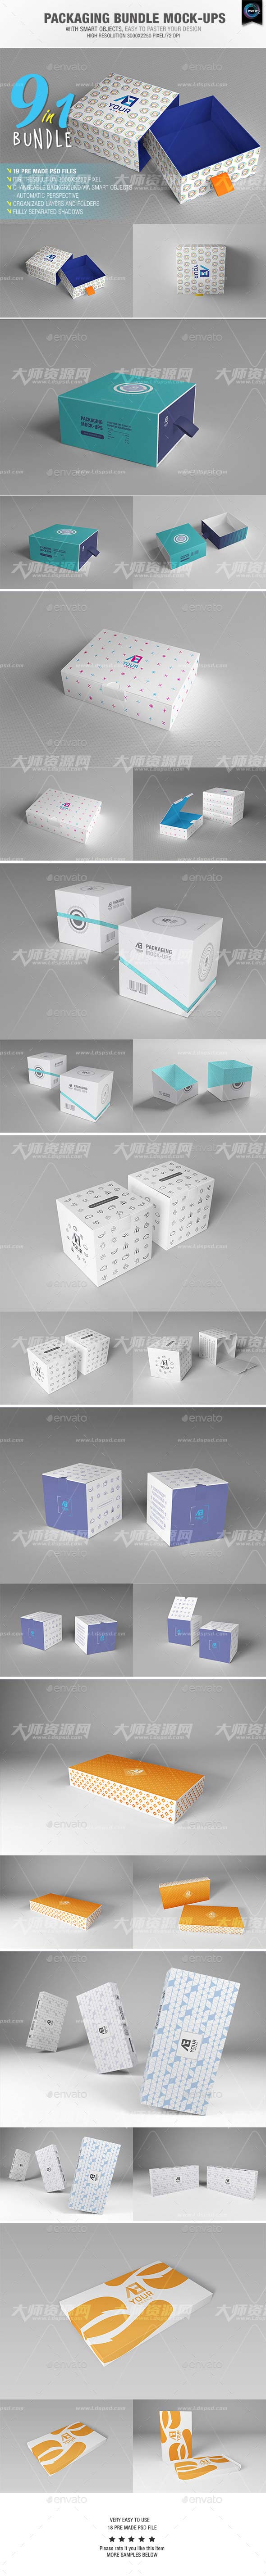 Packaging Bundle Mock-Ups,9套礼品/化妆品包装盒展示模型(合集版)